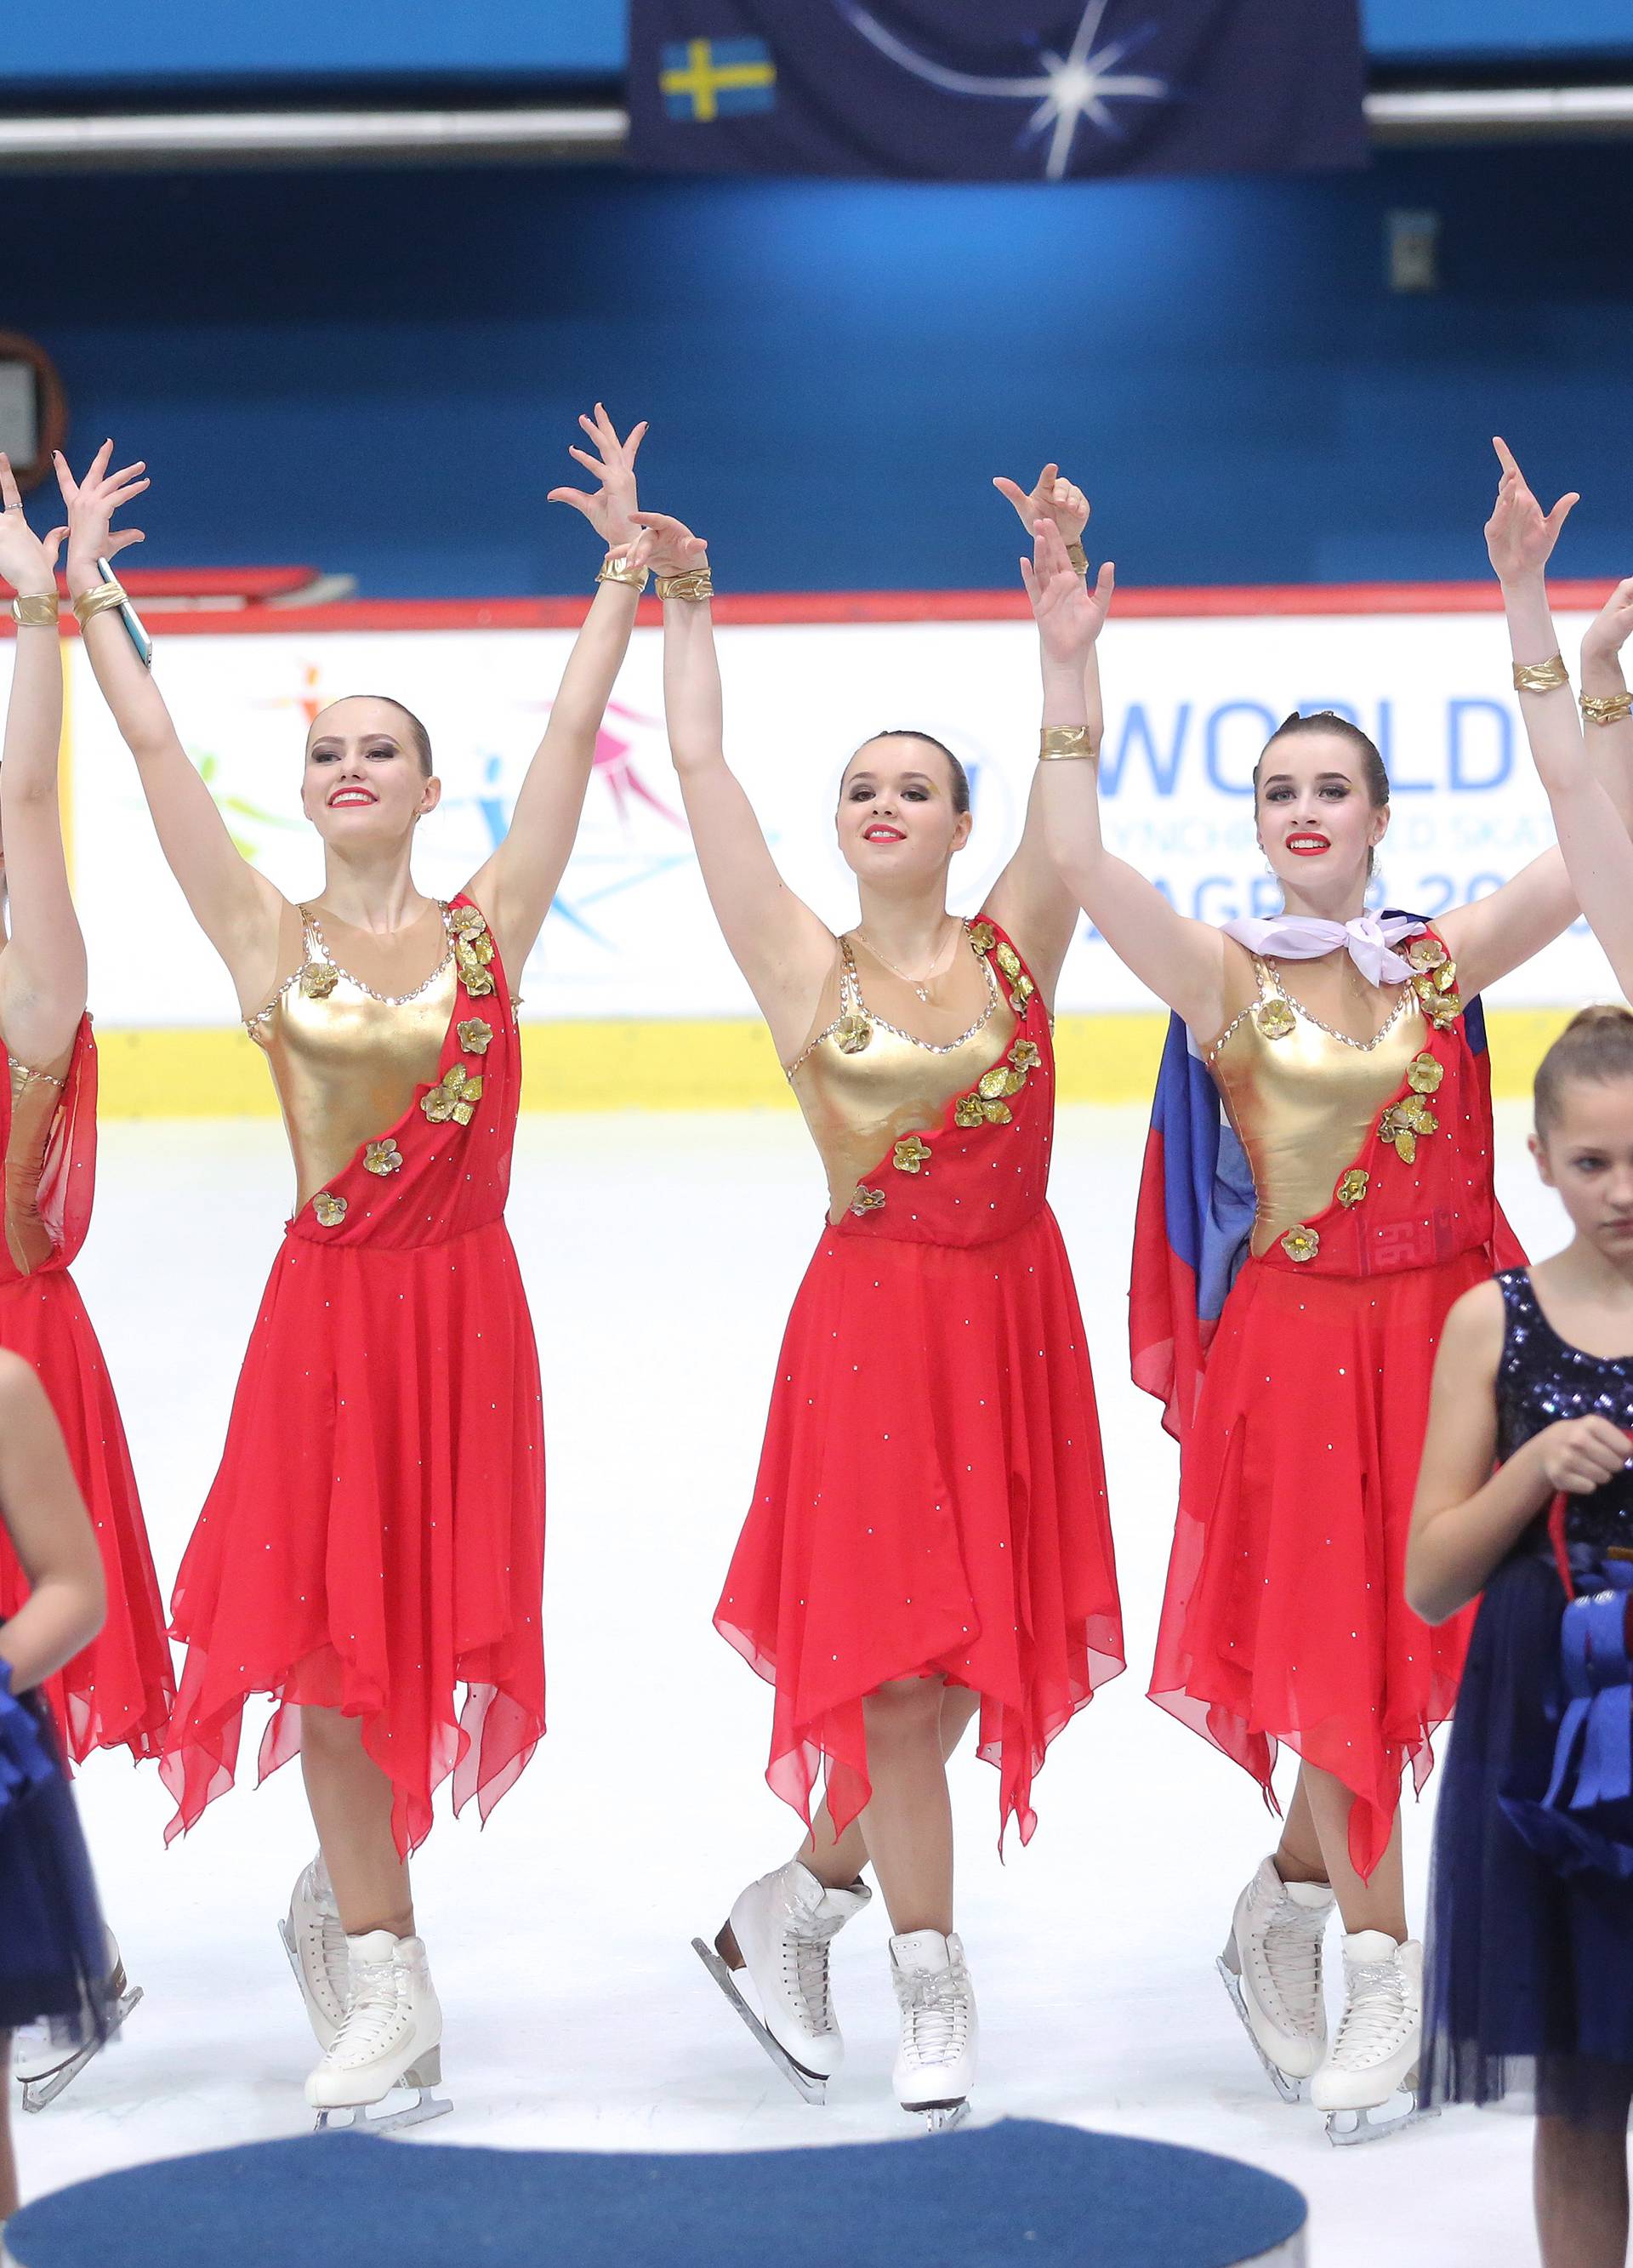 Ruskinje u Zagrebu dokazale da su najbolje juniorke Europe